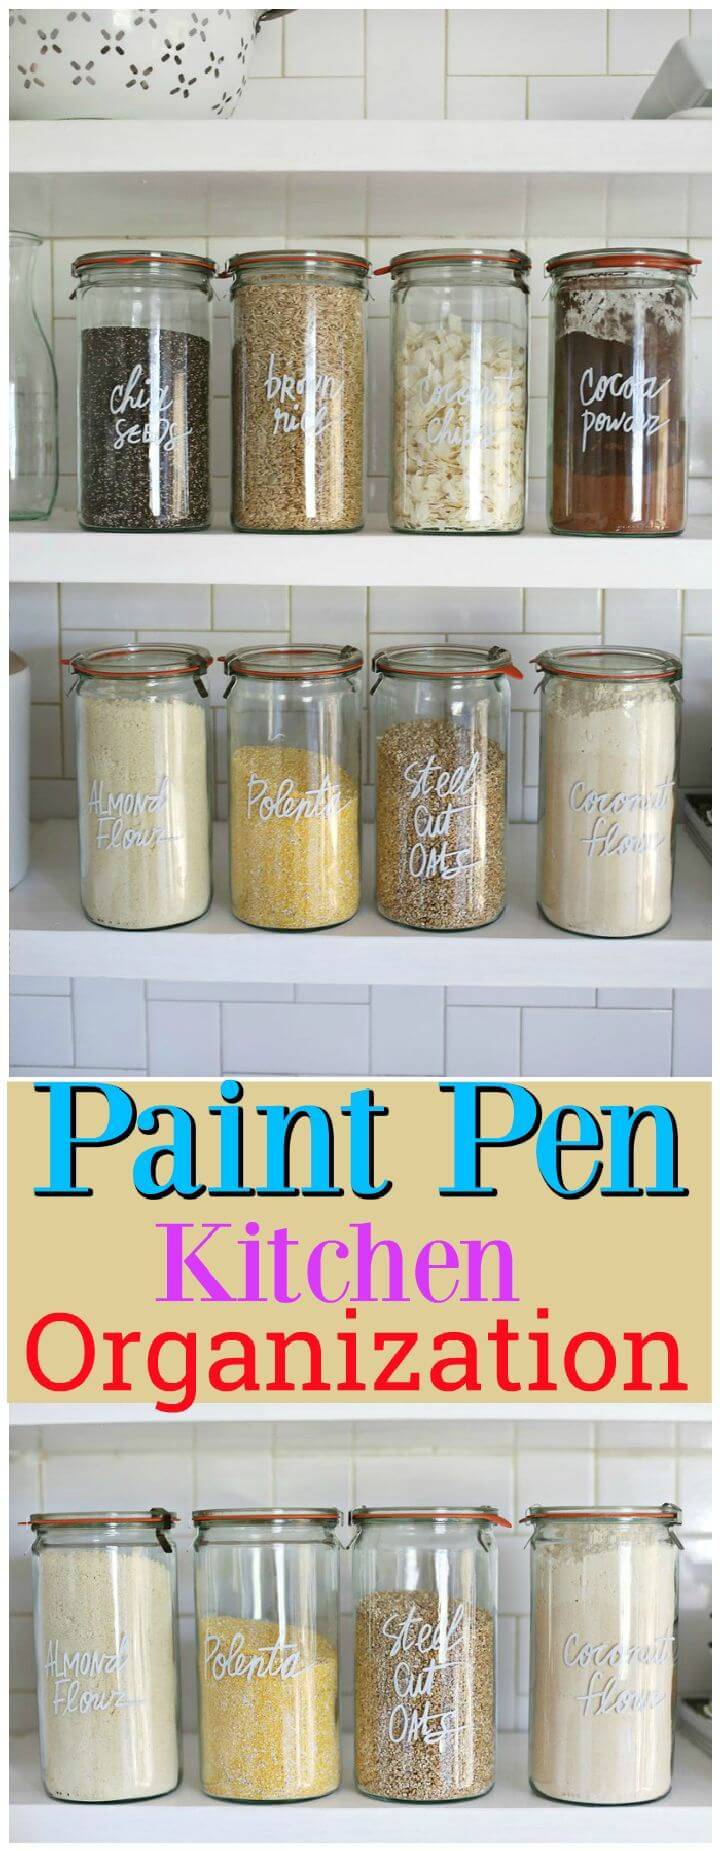 Paint Pen Kitchen Organization